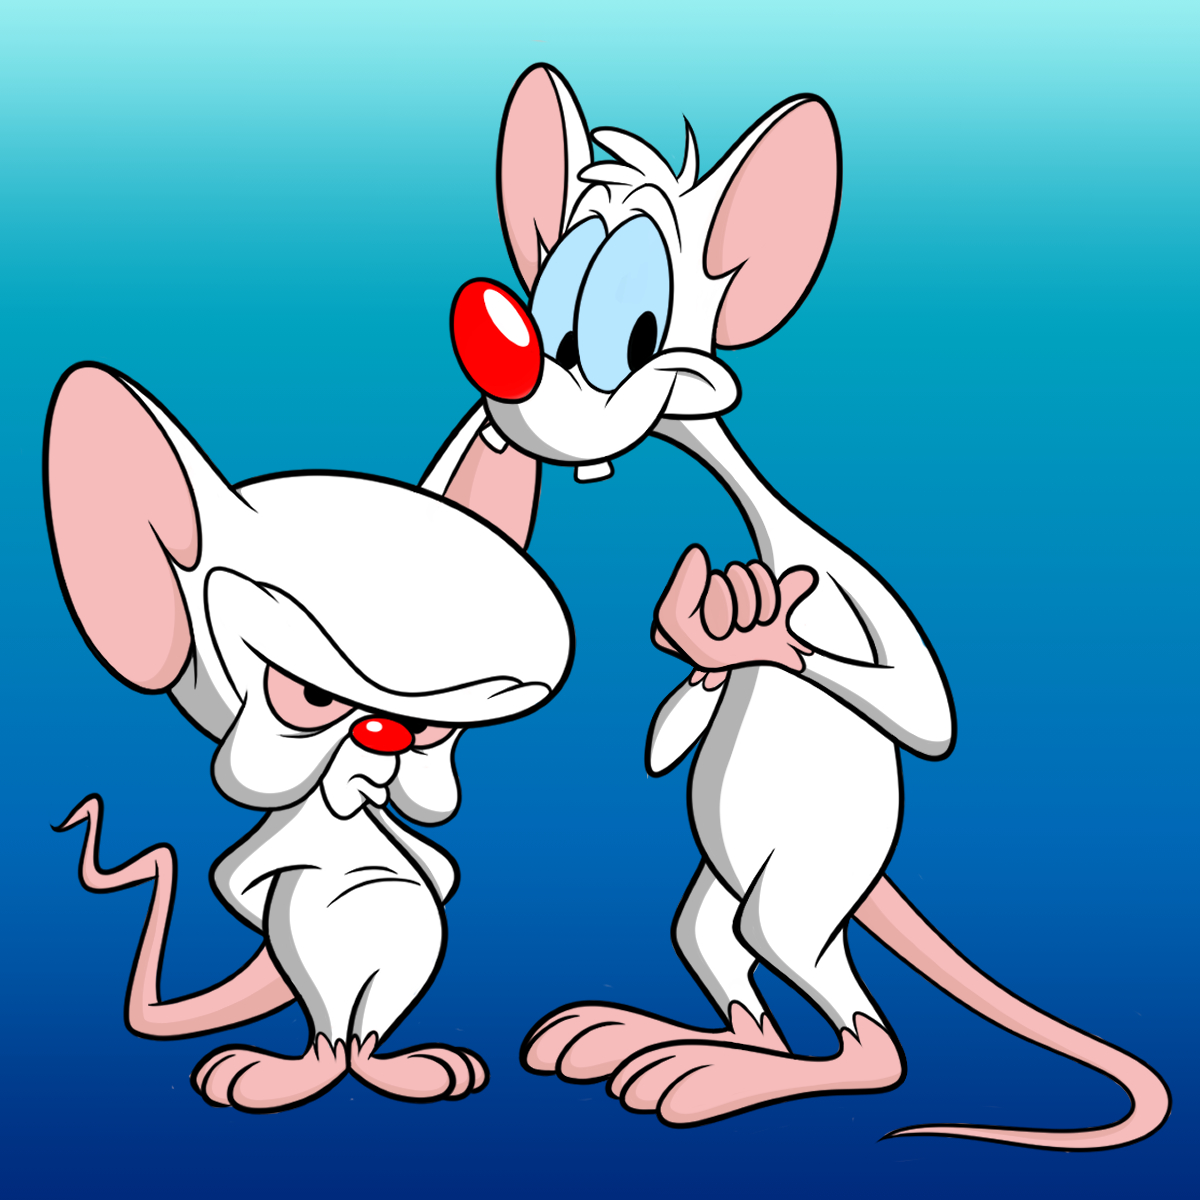 𝙗𝙤𝙤𝙥𝙢𝙖𝙣𝙞𝙖 ブープマニア Pinky Brain 今日の お絵描きは 遺伝子操作された2匹の実験用 ネズミ ピンキーアンドブレイン で す ポイット 最近リブート版の アニメがアメリカのhuluで始まりましたね Pinkyandbrain